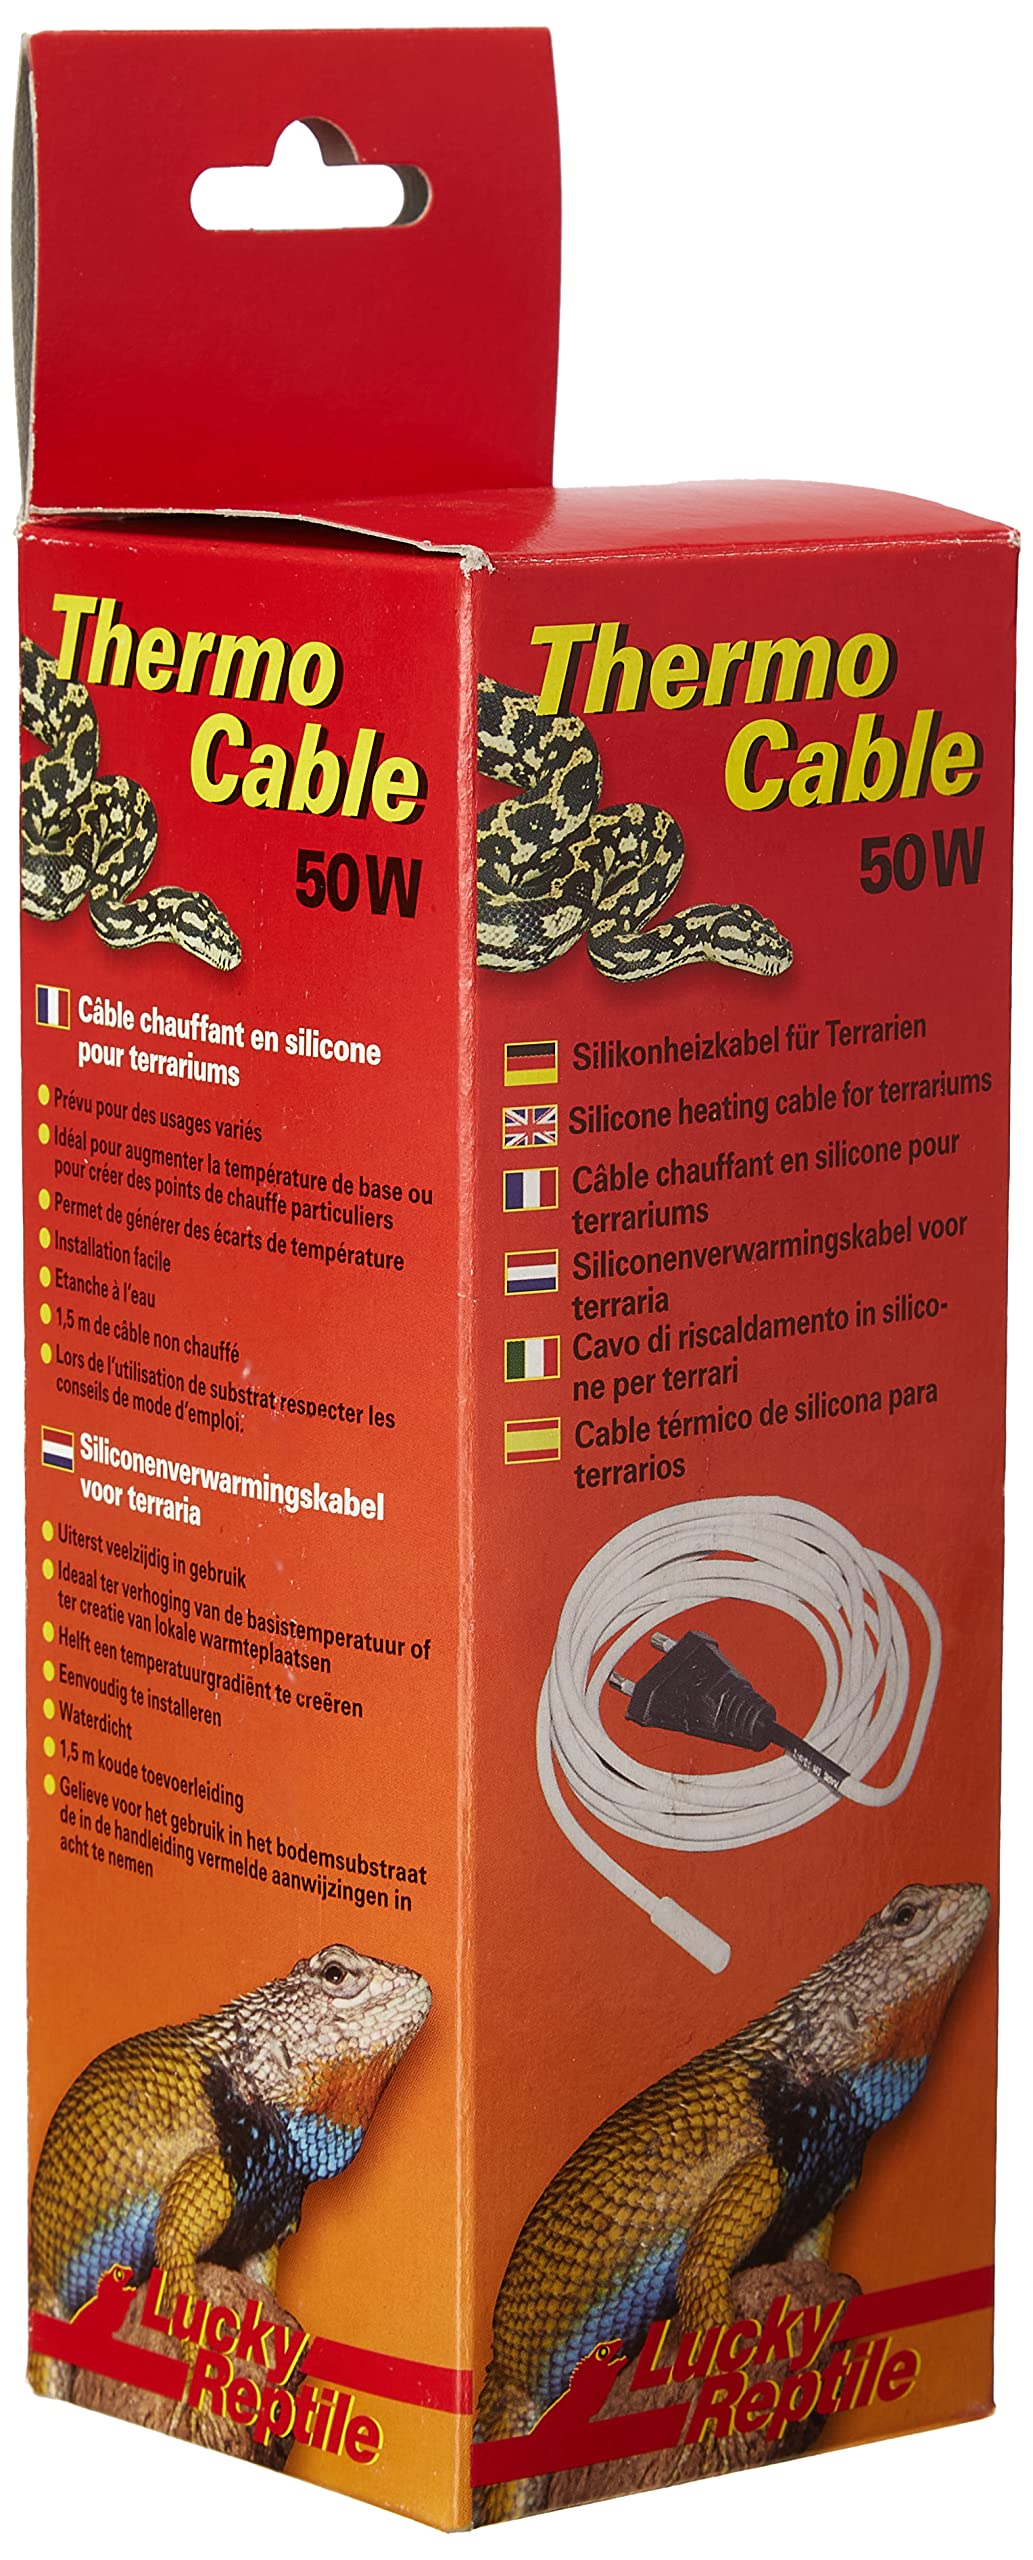 Lucky Reptile Thermo Cable - 50 W Heizkabel für Terrarien - 6,5 m Kabel mit 1,5 m Kaltzuleitung - schnelle Aufheizung & gleichmäßige Wärme - Silikon Heizkabel wasserdicht - Terrarium Zubehör